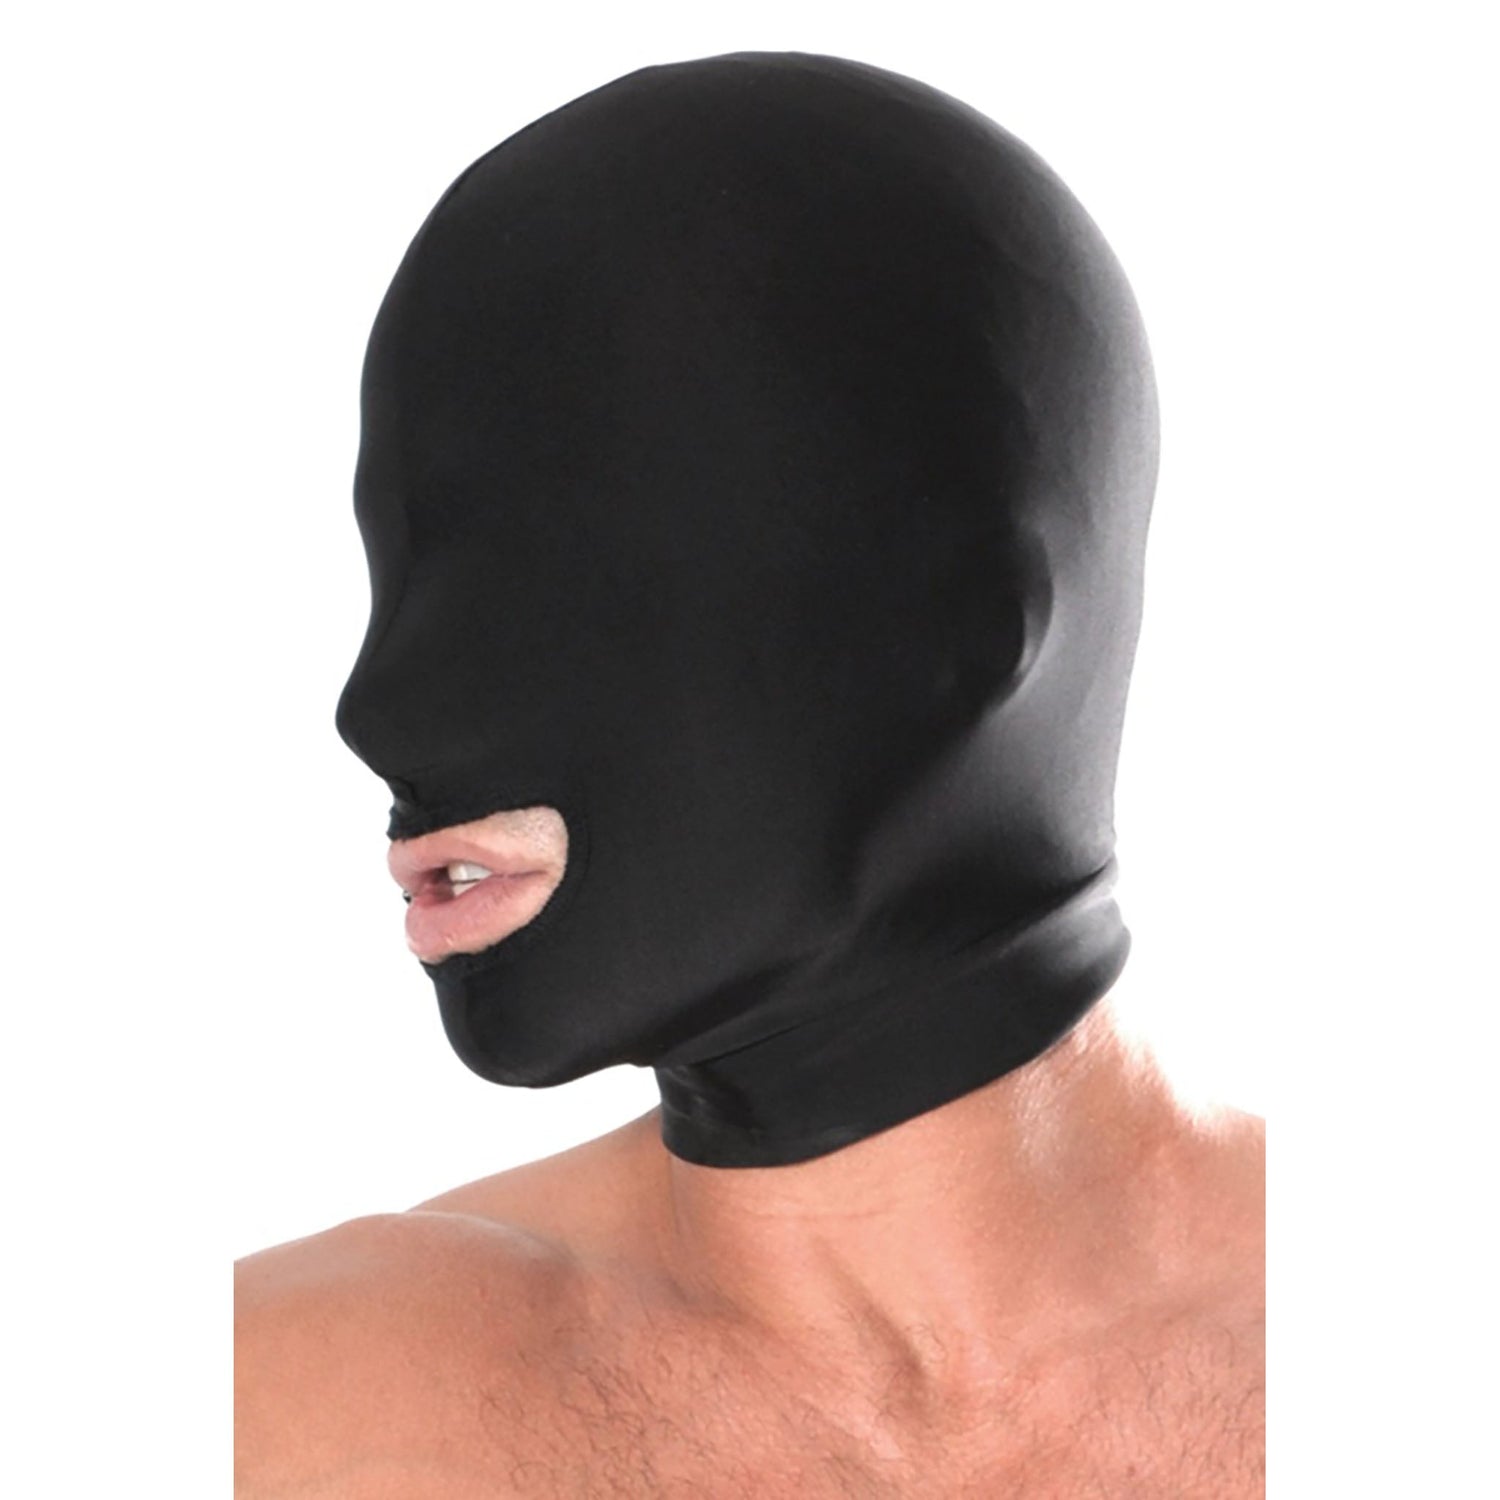 Spandex Open Mouth Hood, schwarze Kopfmaske mit einem Loch für den Mund von ihm getragen